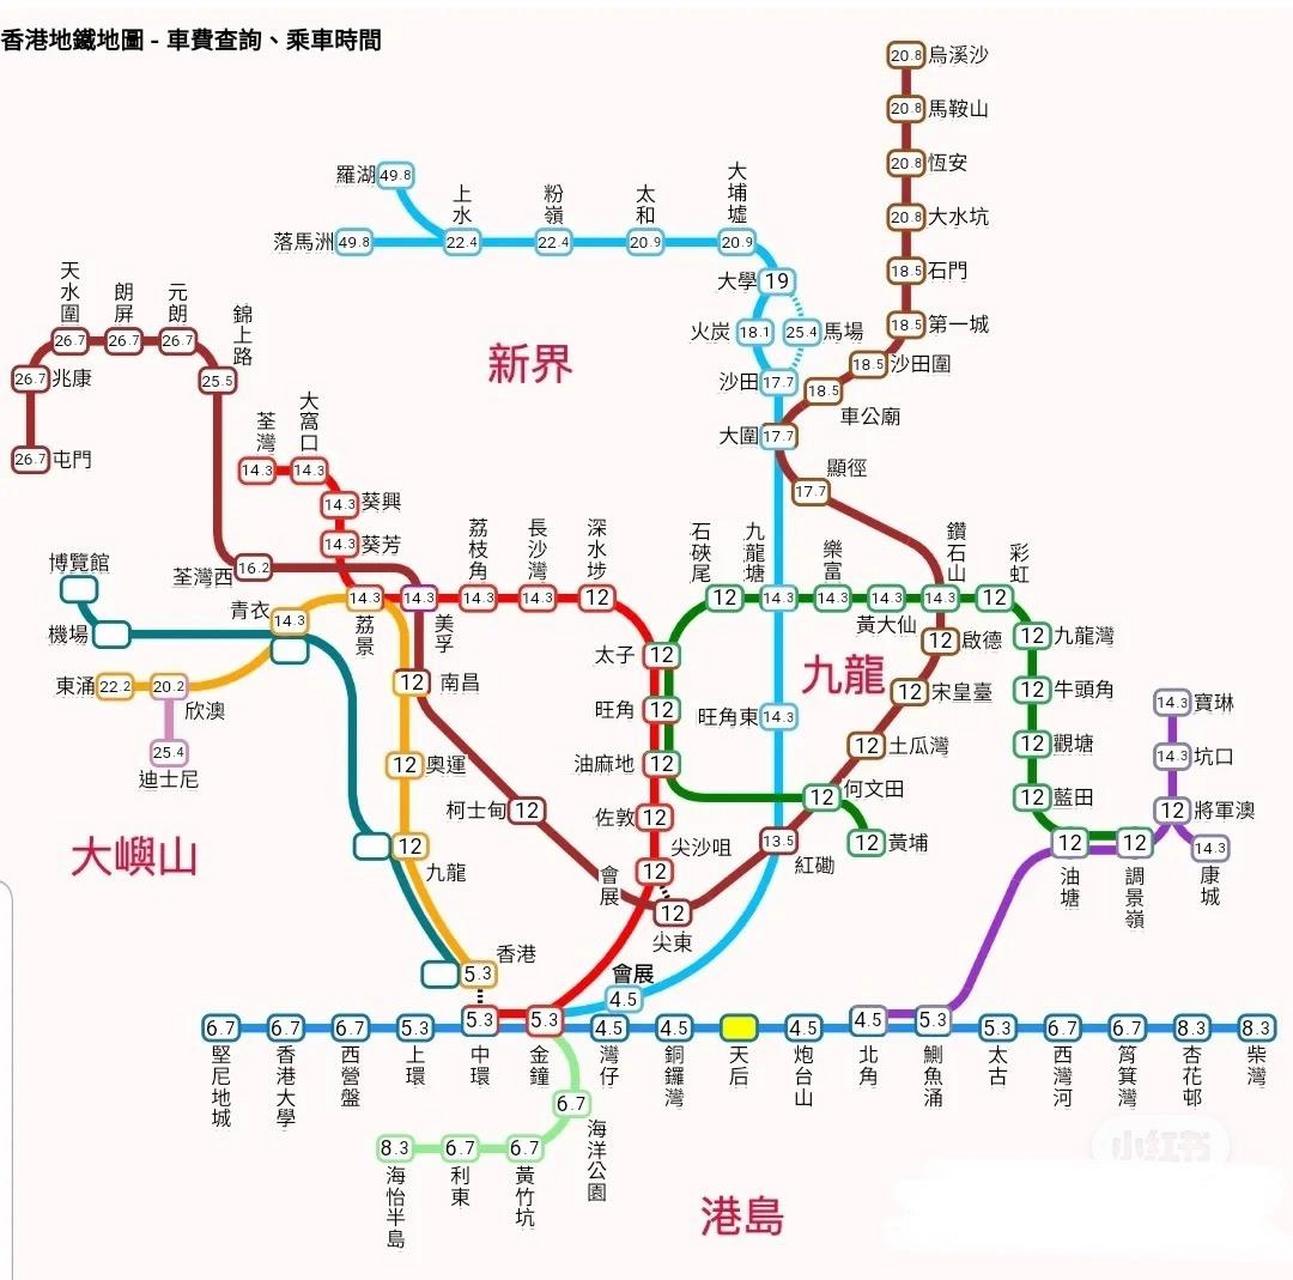 香港地铁线路图 赶快保存啦! 需要!购买香港/澳门移动流量的教程!